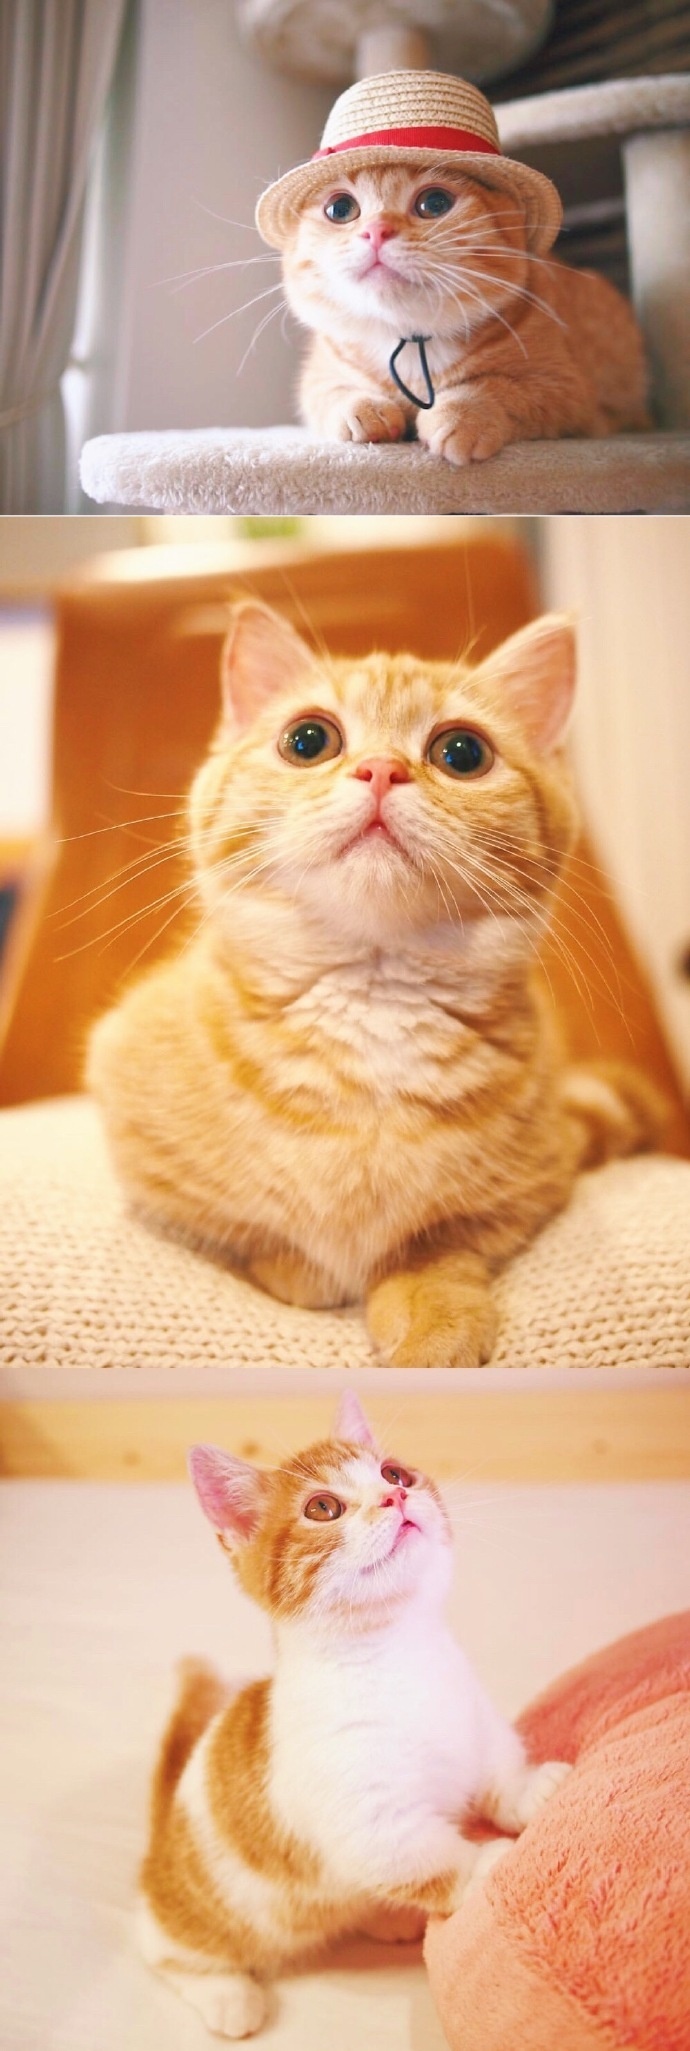 猫的图片可爱 很萌的橘猫图片(7)